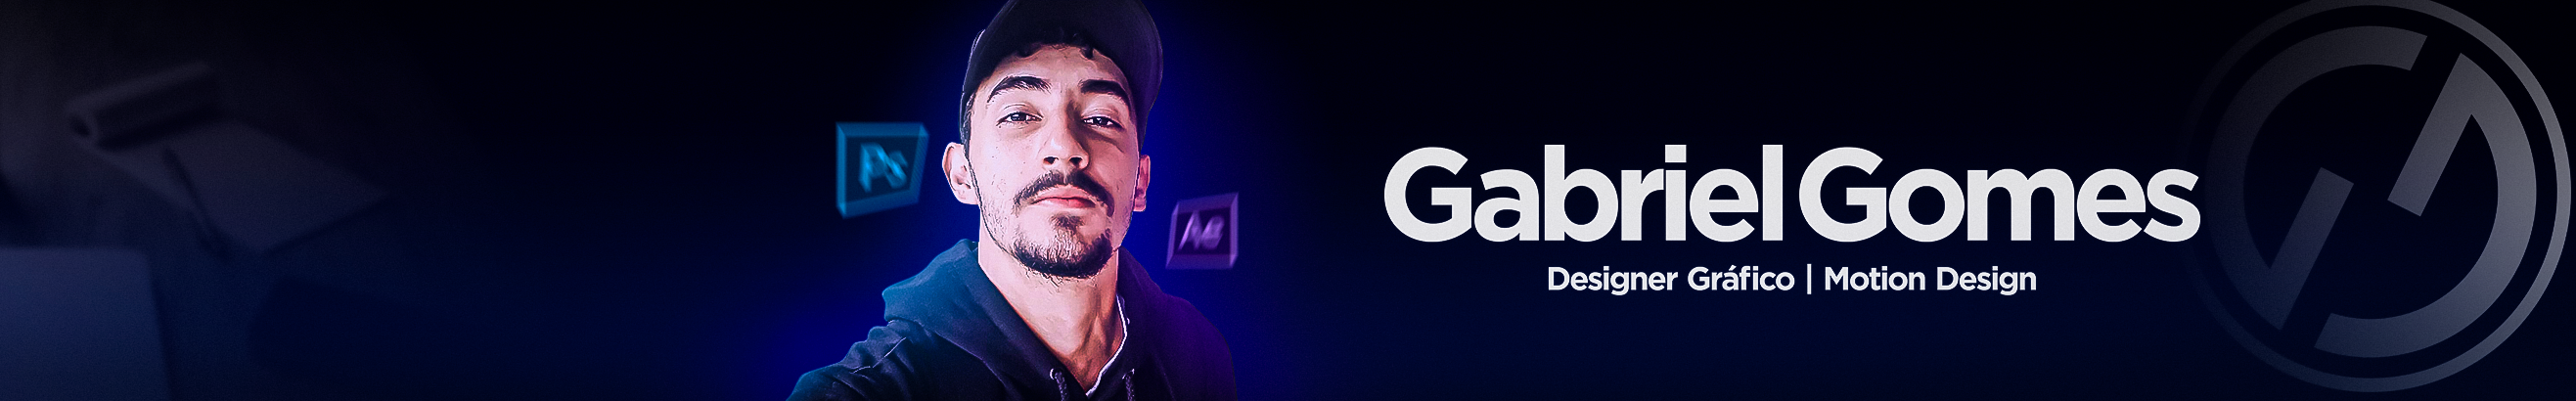 Banner de perfil de Gabriel Gomes